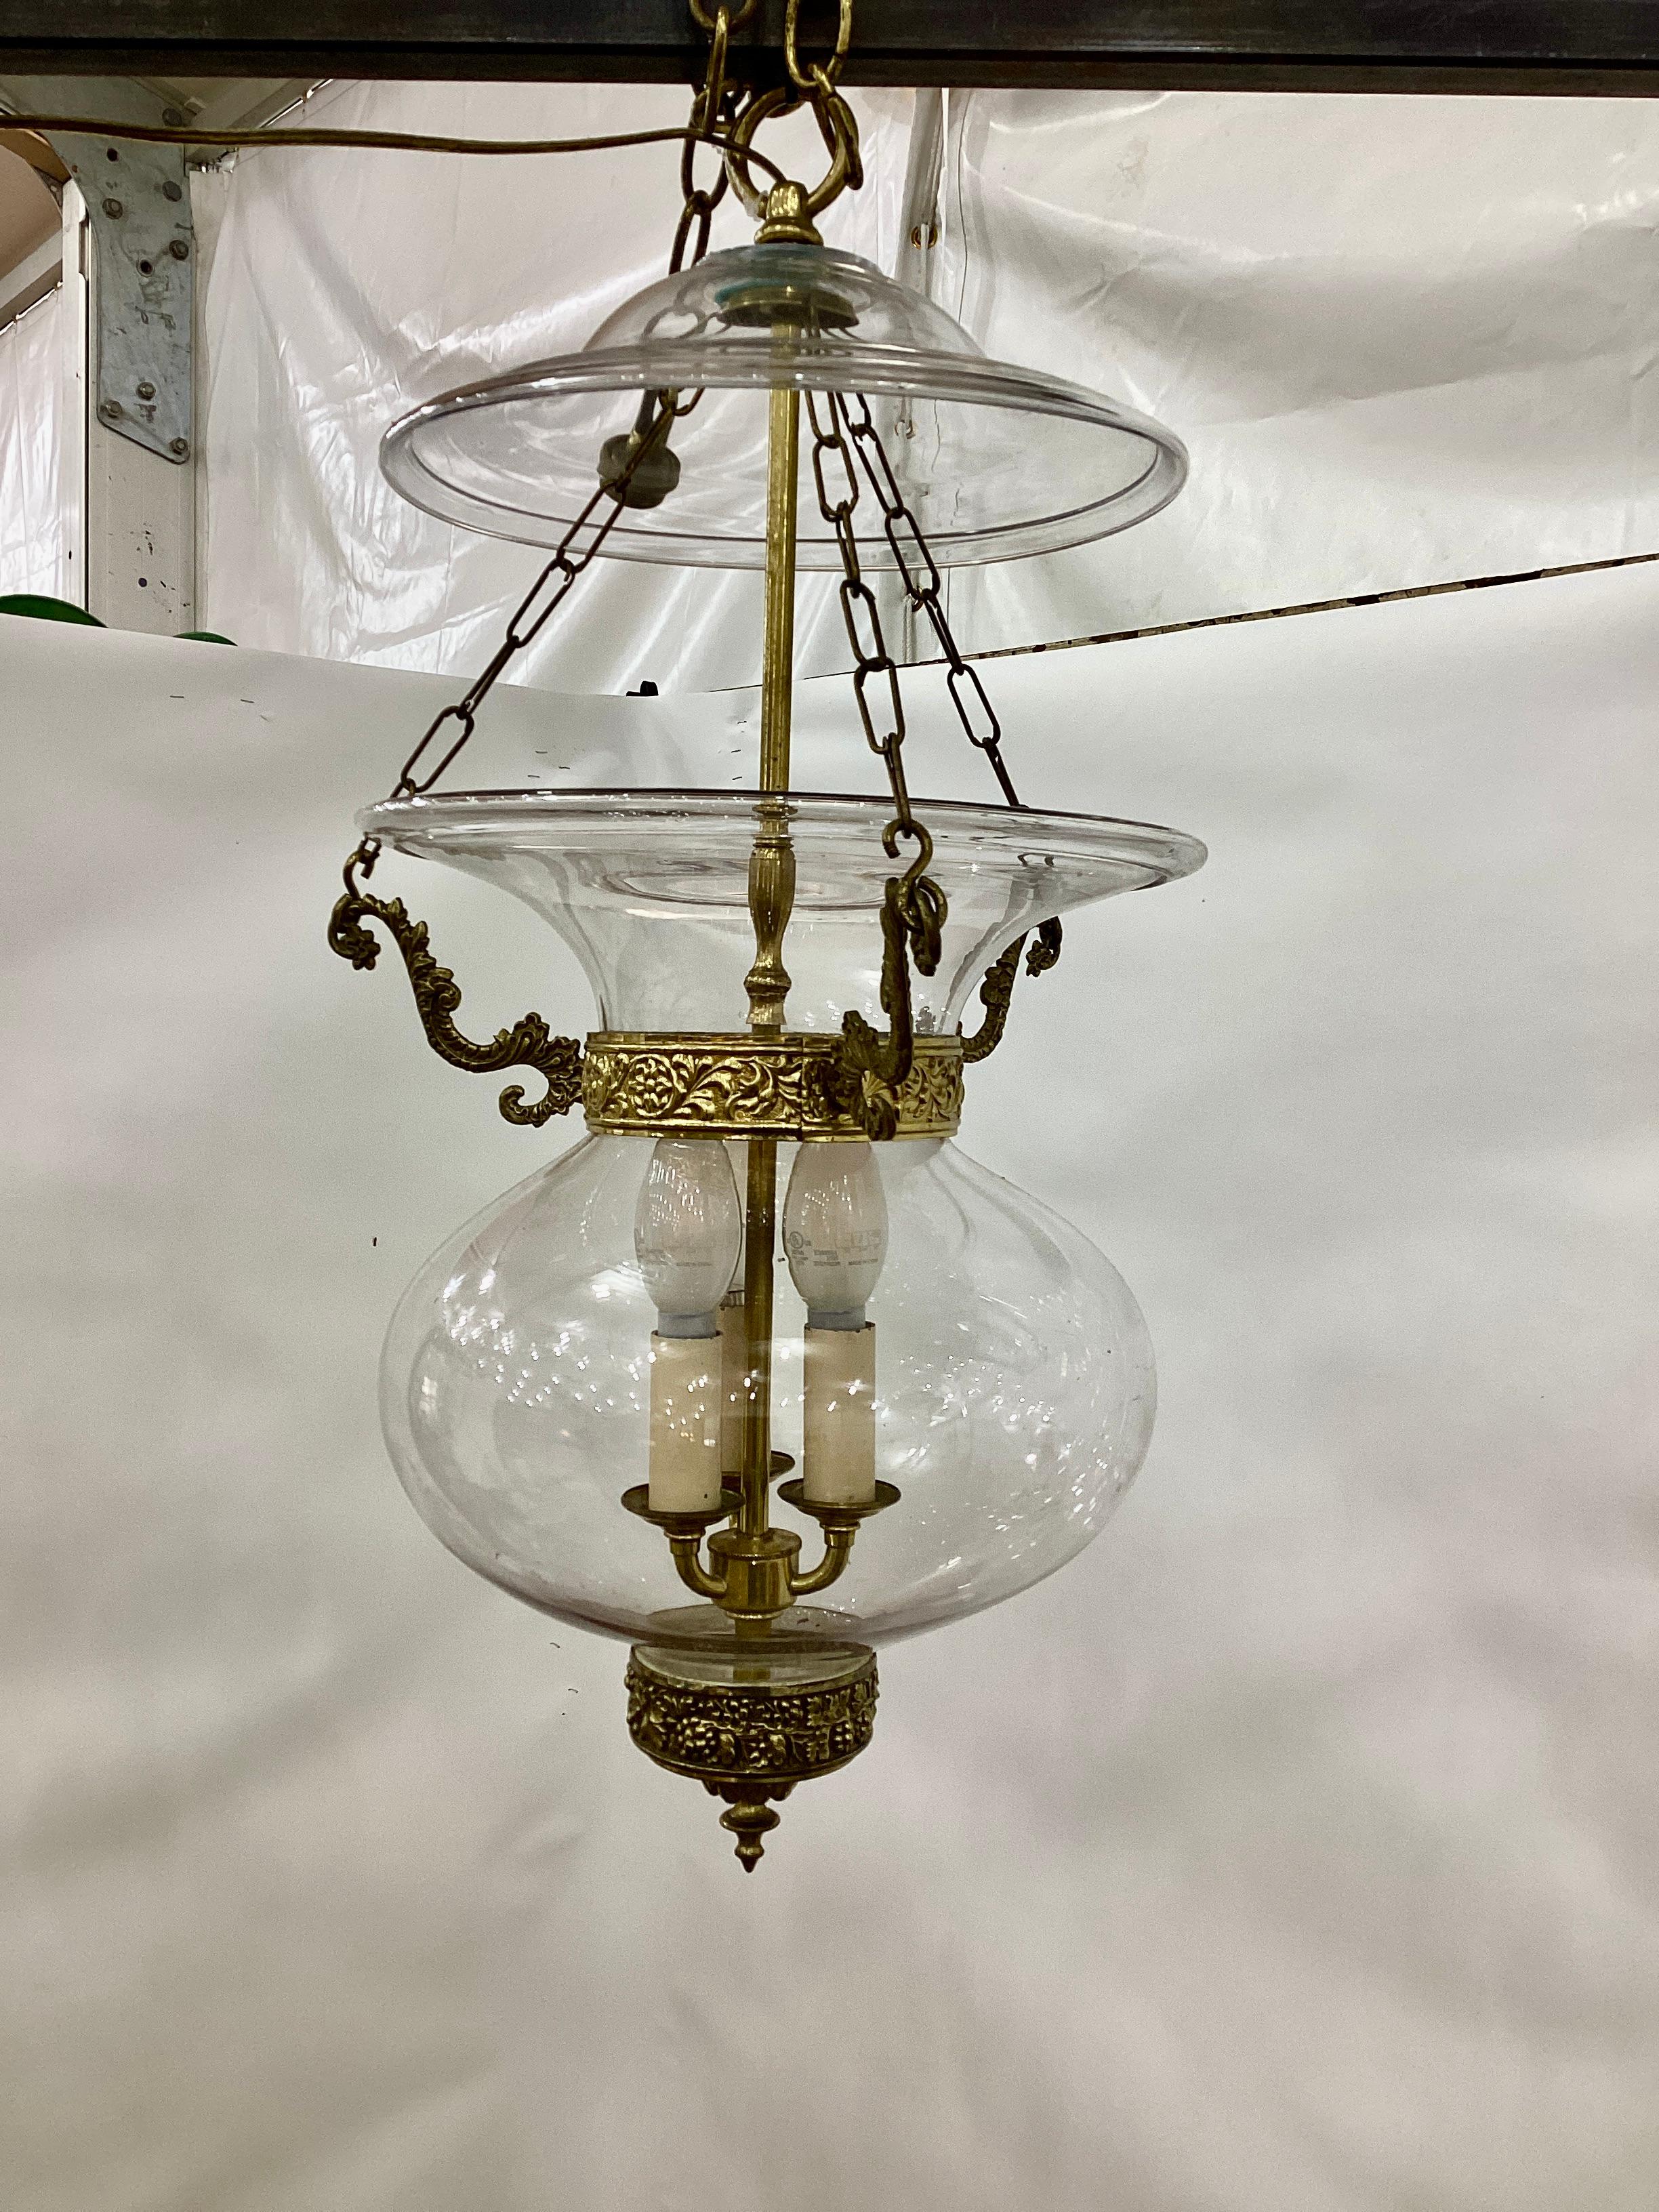 Eine englische Regency-Laterne aus Klarglas mit Messingkragen aus dem frühen 19. Jahrhundert, um 1830. Die Laterne ist mit einem dreifachen Kettenzug und einer Rauchglocke ausgestattet. Die Laterne ist verkabelt und funktionstüchtig.